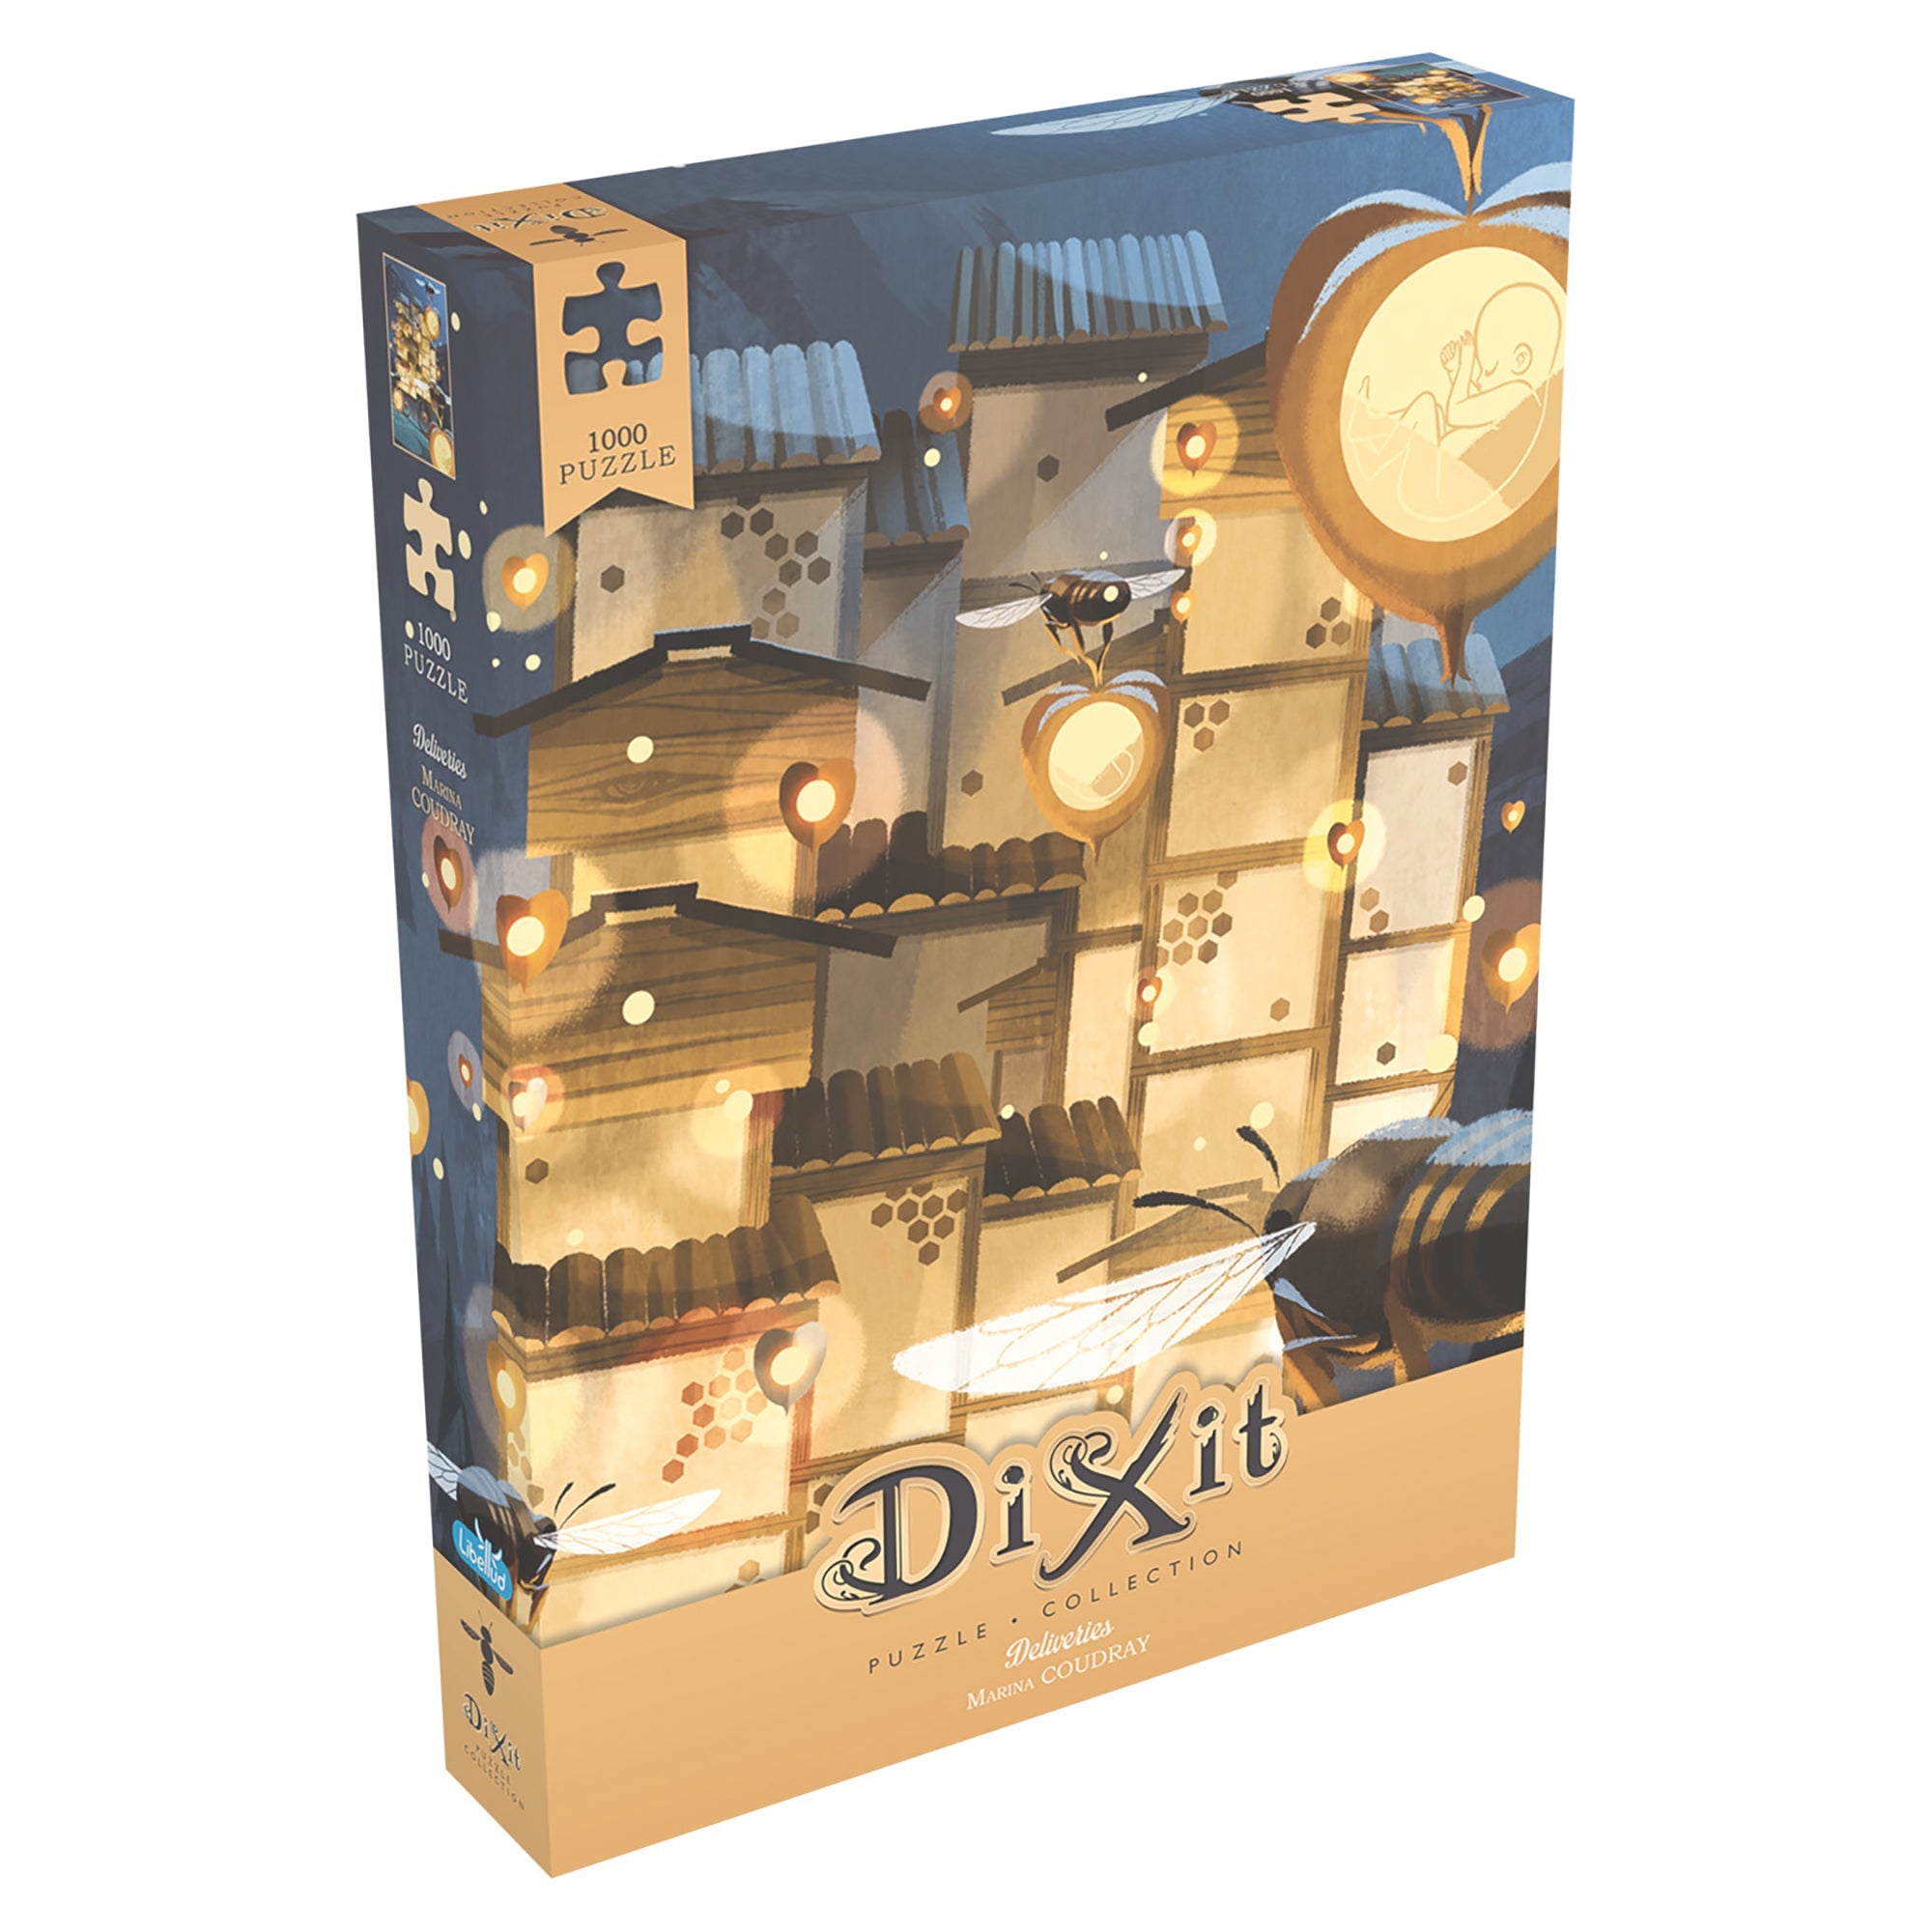 Dixit 1000pcs Puzzle - Deliveries